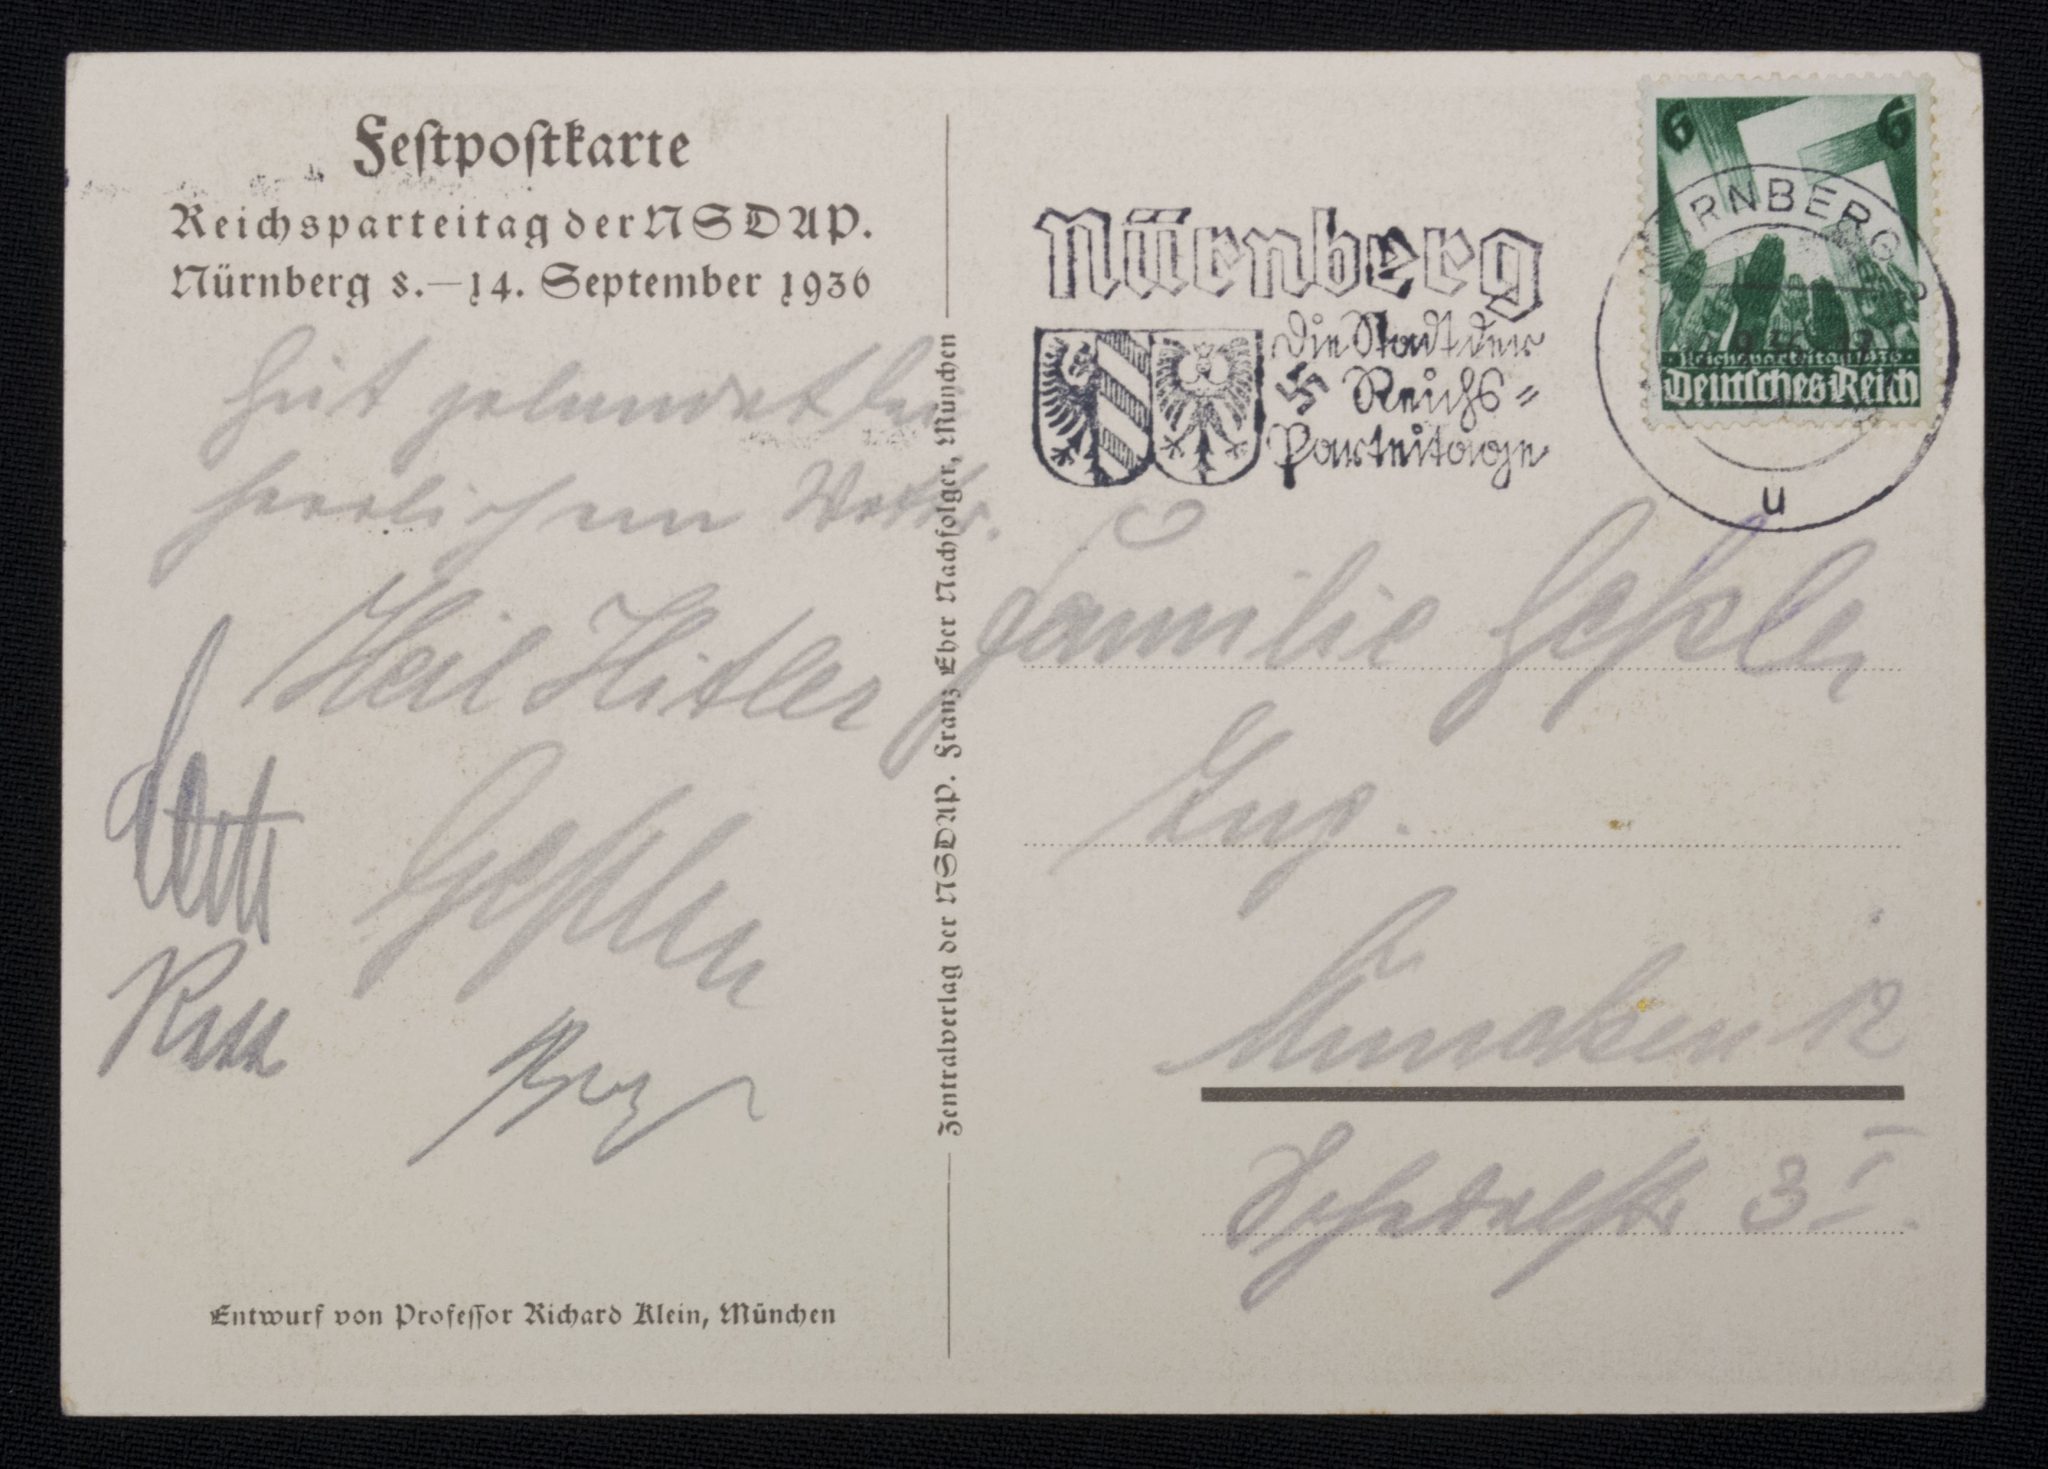 (Postcard) Reichsparteitag 1936